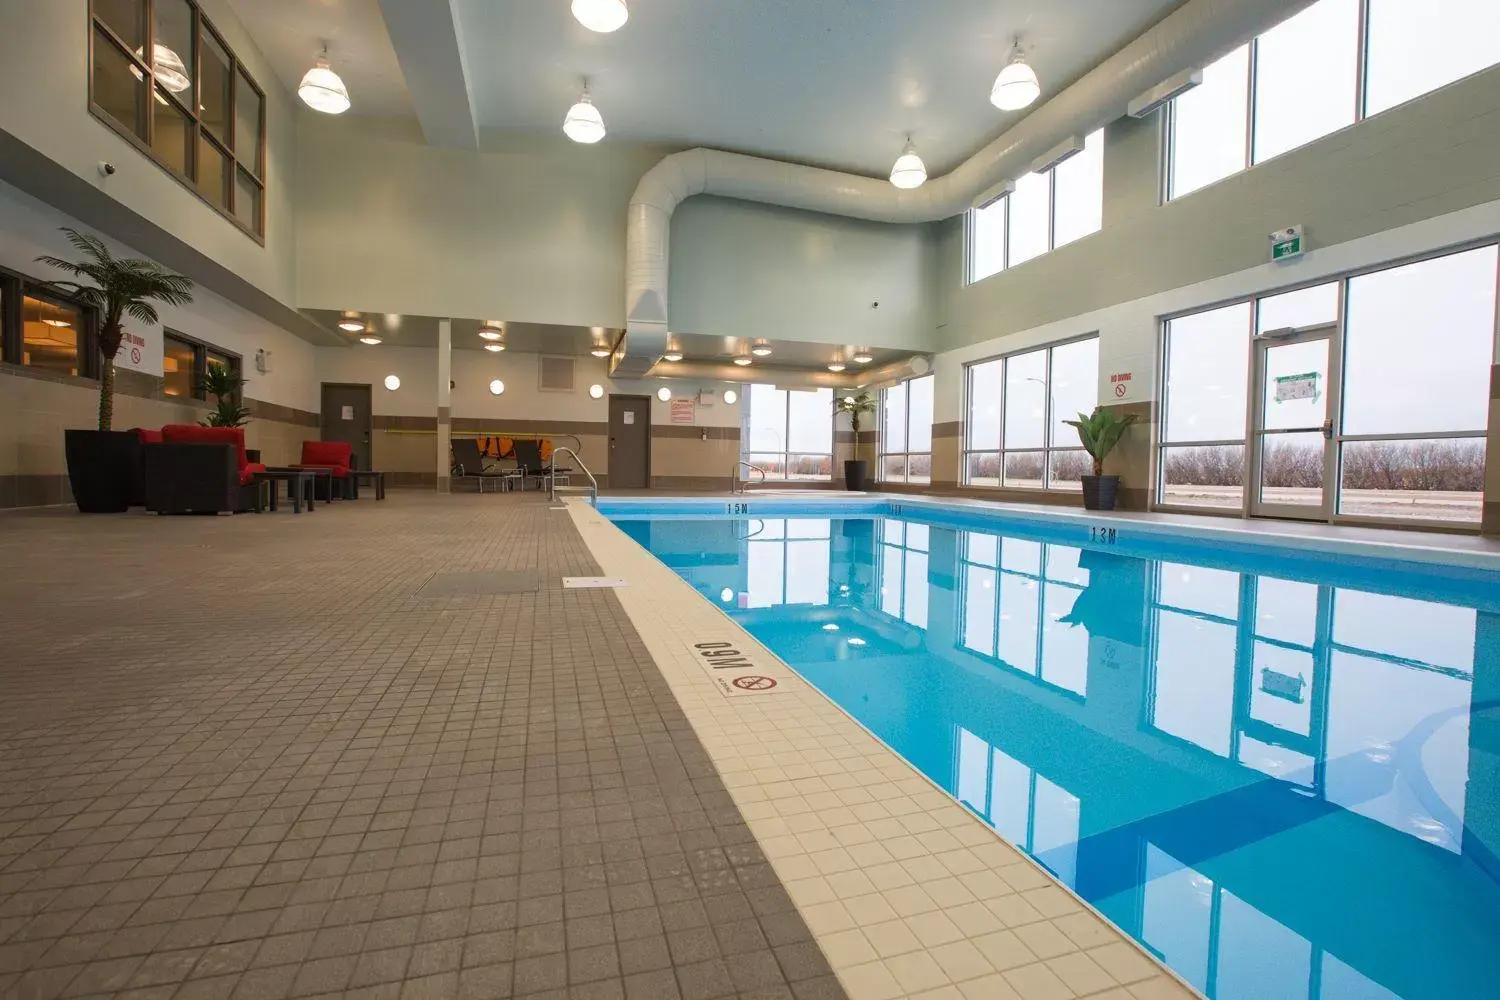 On site, Swimming Pool in Best Western Plus Airport Inn & Suites